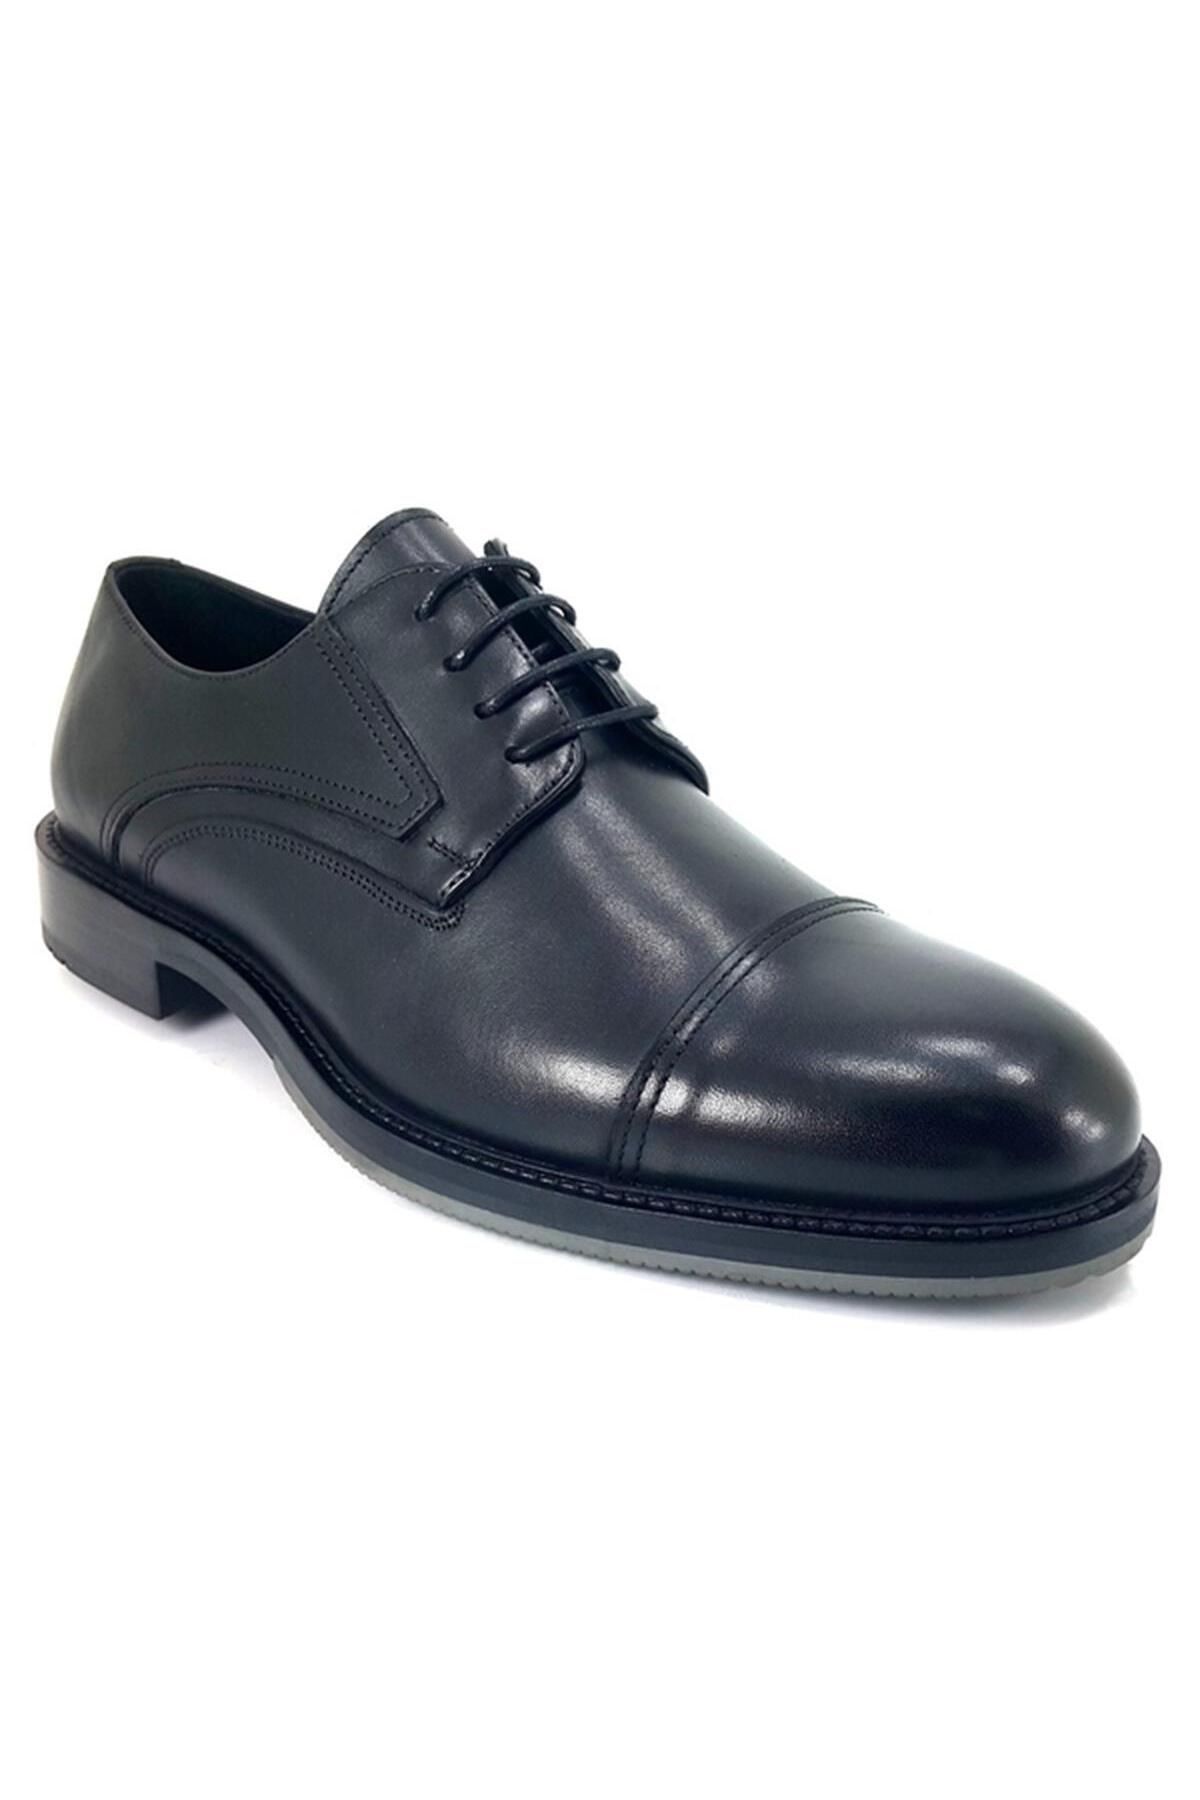 Greyder 75010 Klasik Günlük Ayakkabı - Siyah